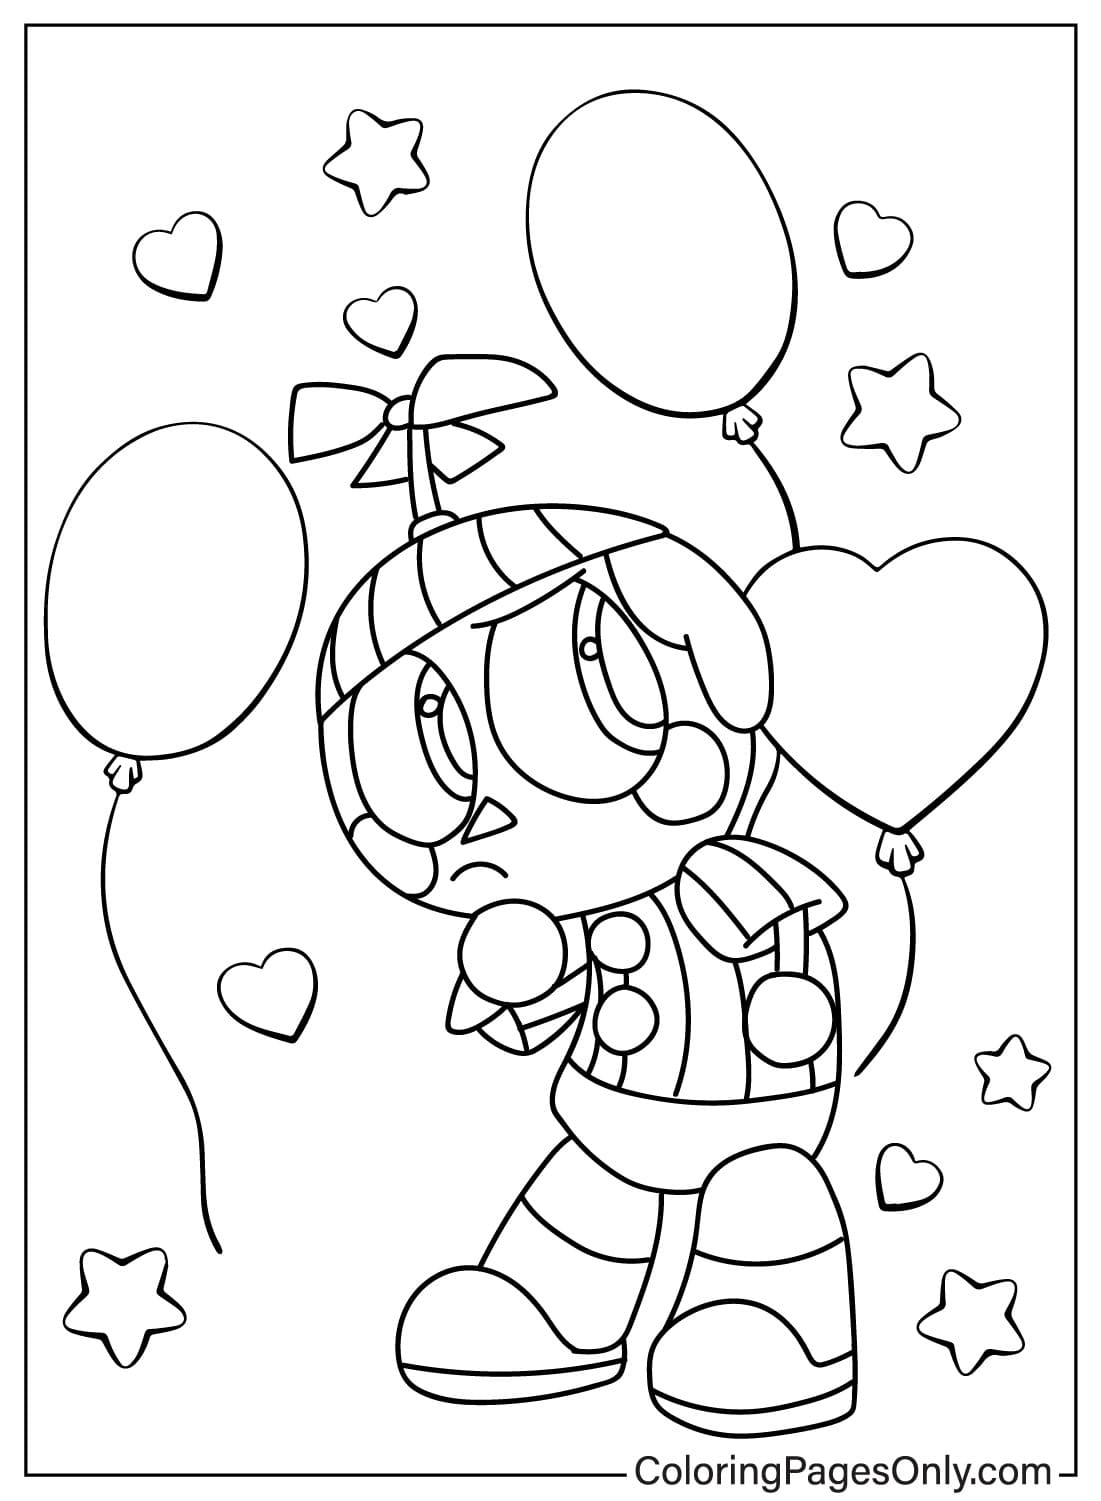 Linda página para colorear de Balloon Boy de Balloon Boy